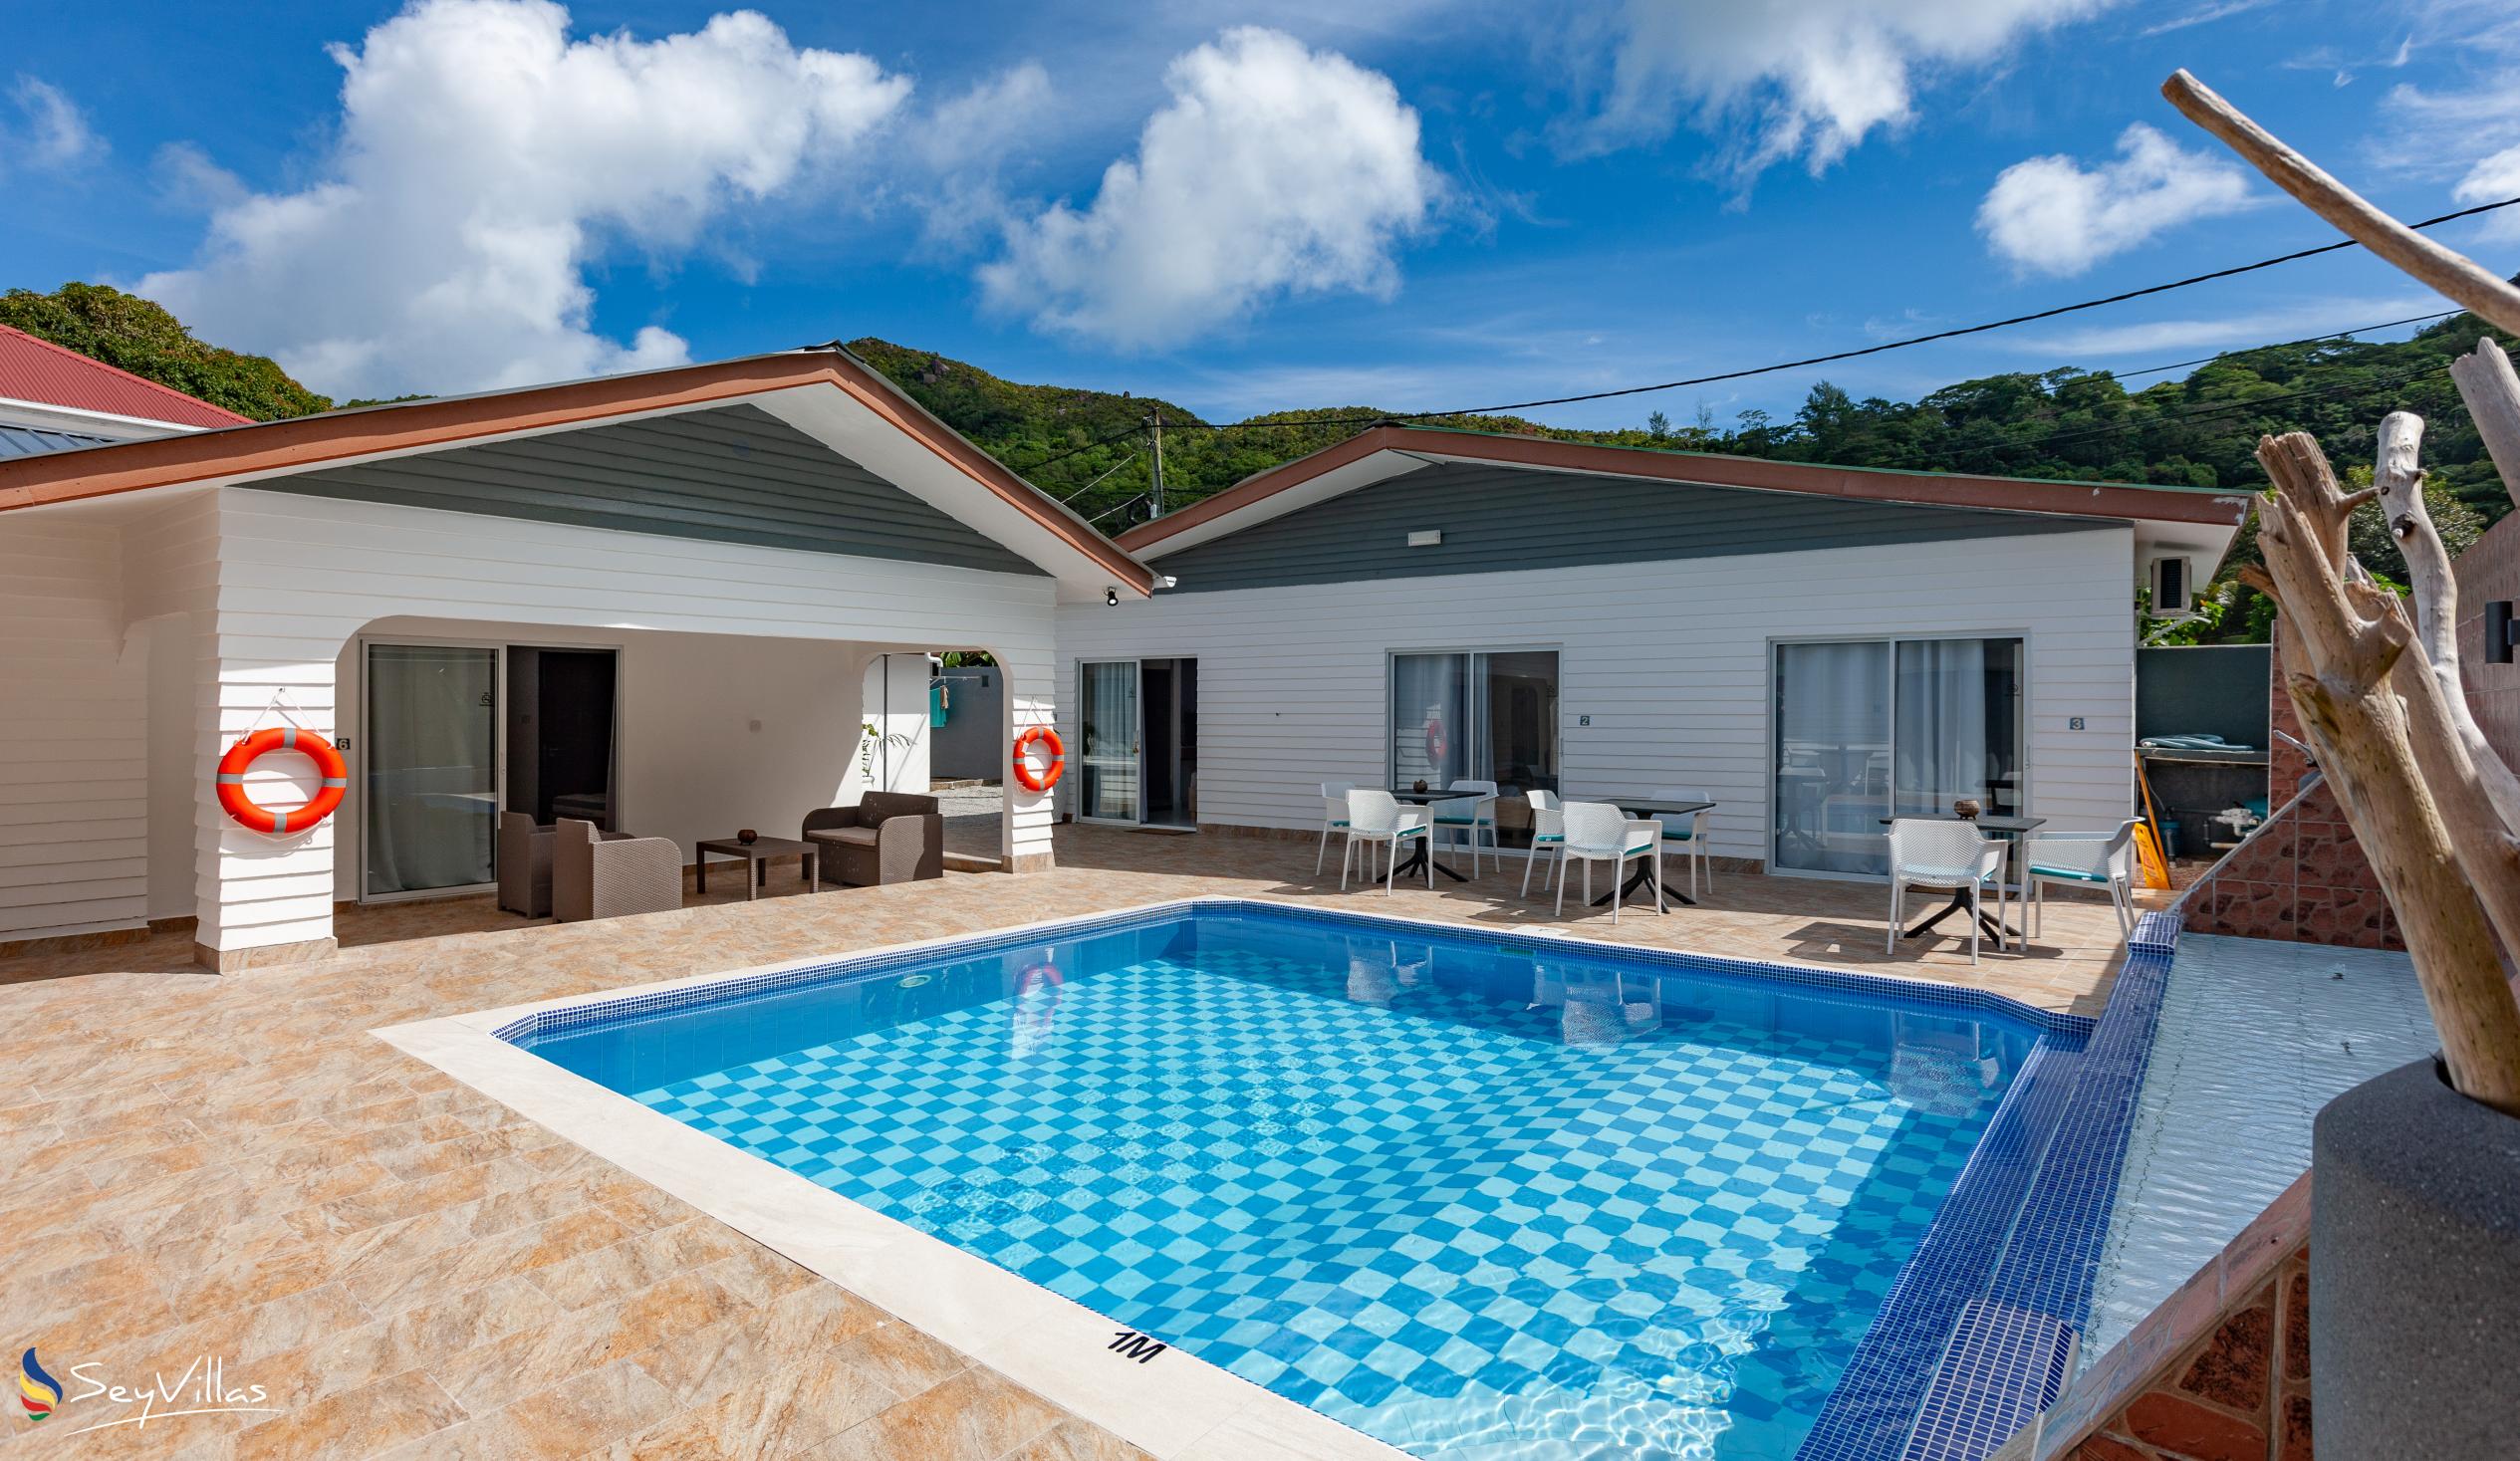 Foto 1: Hotel Plein Soleil - Aussenbereich - Praslin (Seychellen)